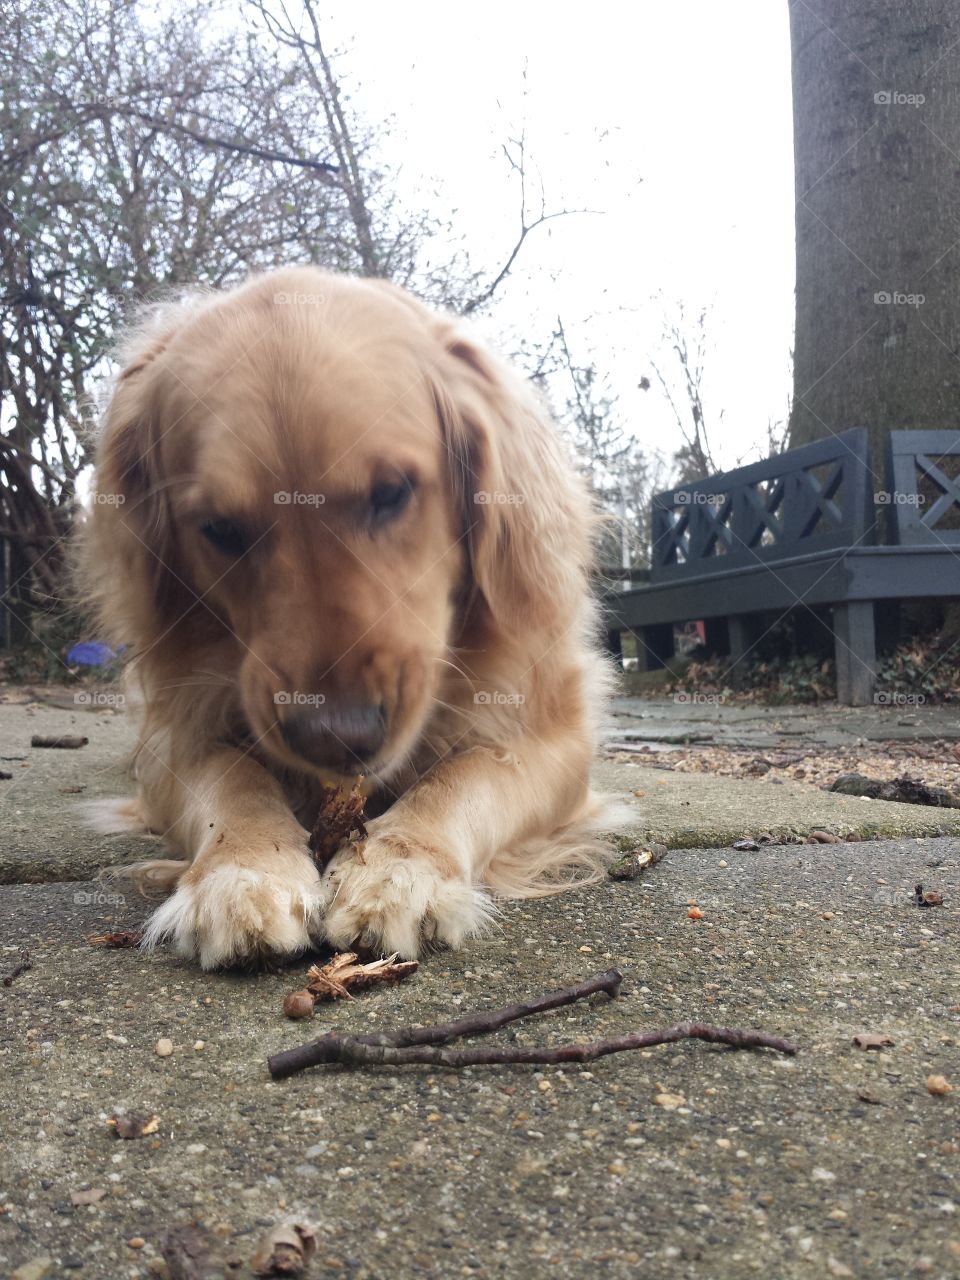 Dog eat stick.